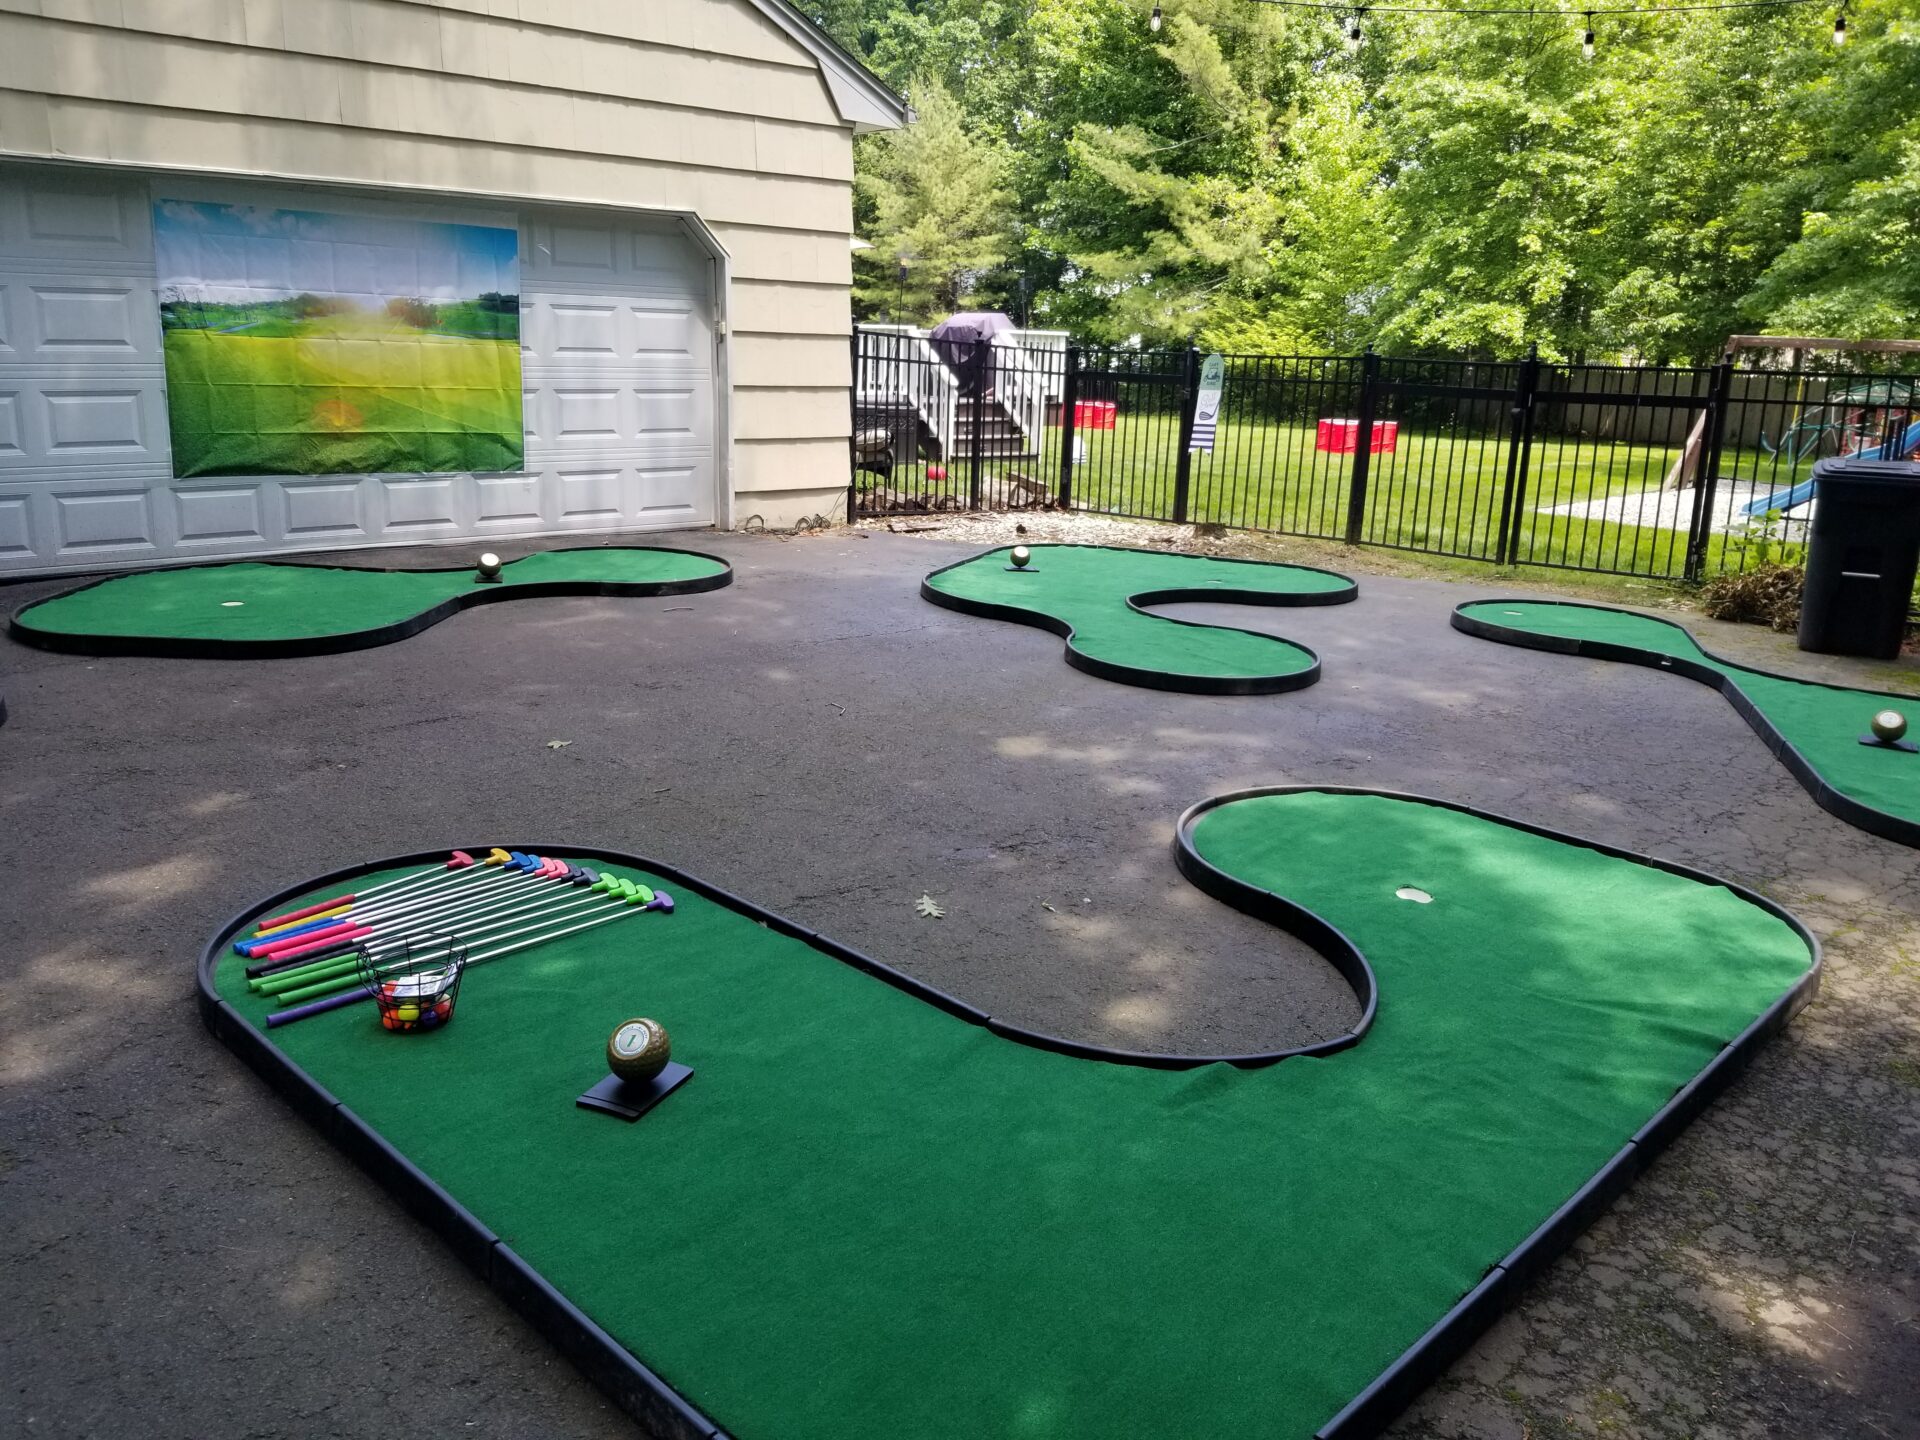 A mini golf course set up in a backyard.